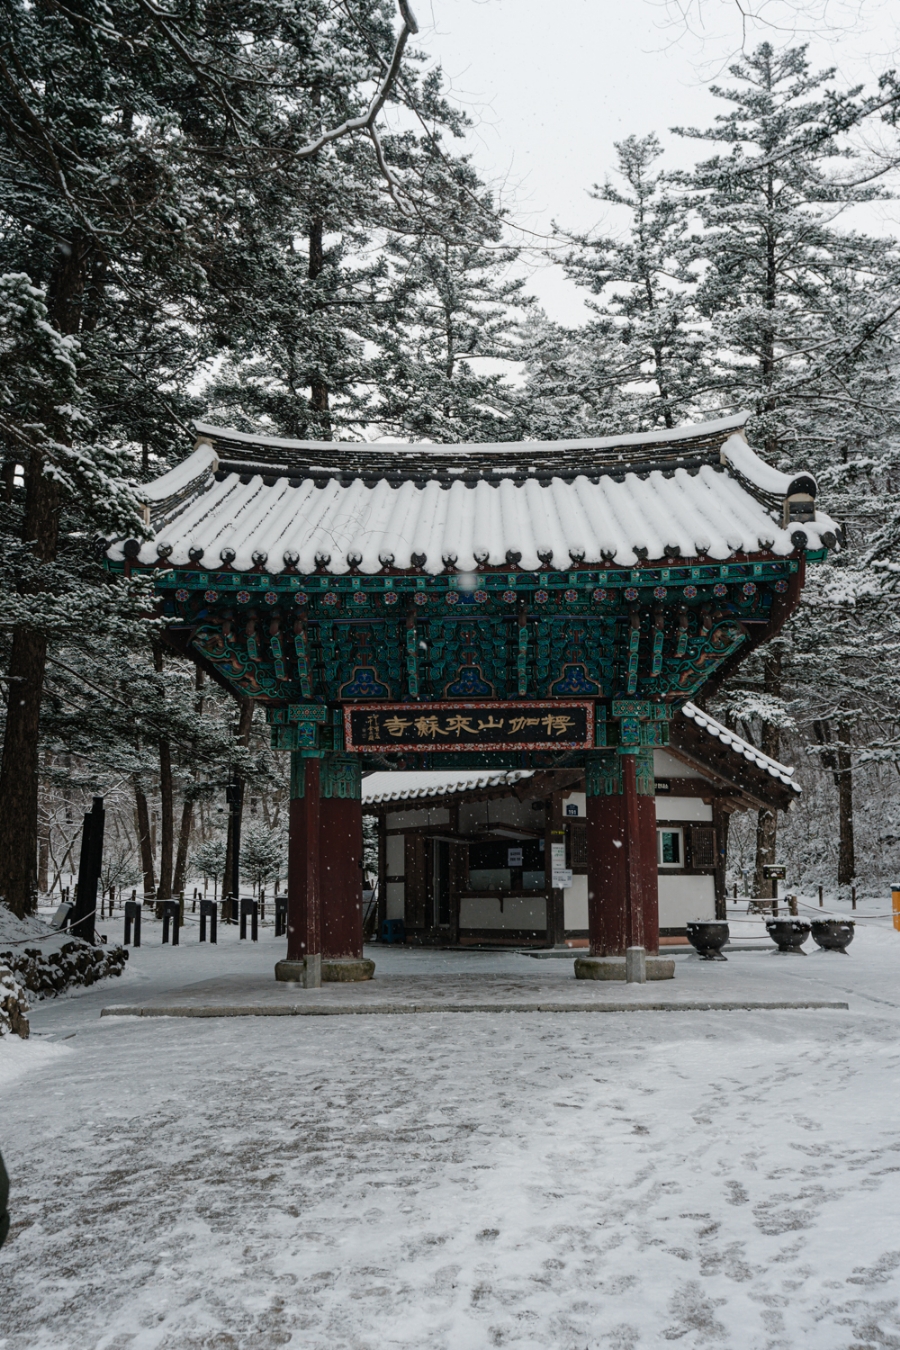 [변산반도국립공원] 전북 부안 내소사 전나무숲길 설경(12월)